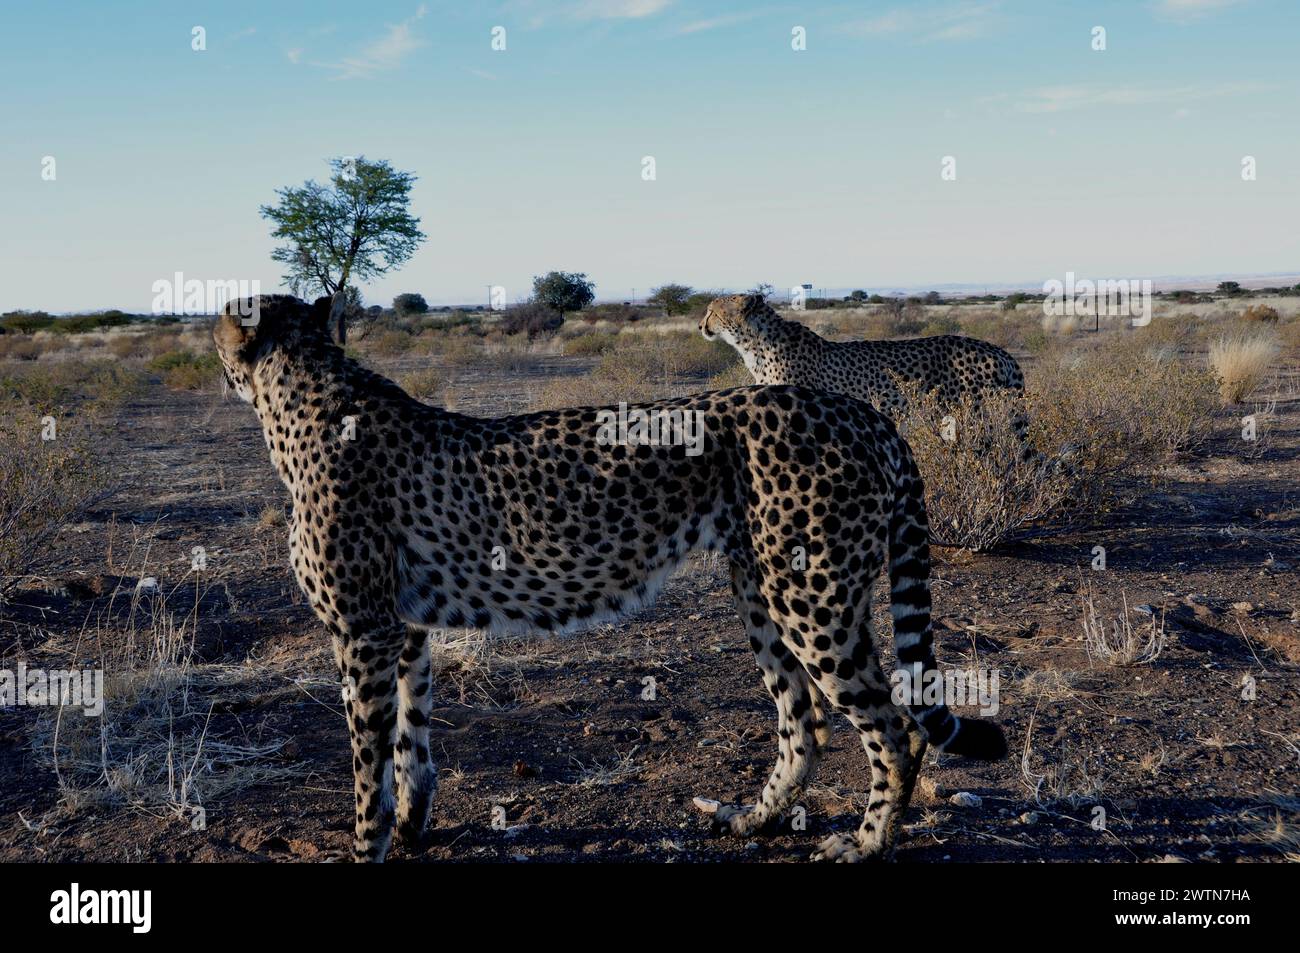 Zwei Geparde in der namibischen Kalahari. In Namibia lebt ein Drittel der weltweiten Gepard-Population. Two jeethas in the namibian Kalahari - where o Stock Photo